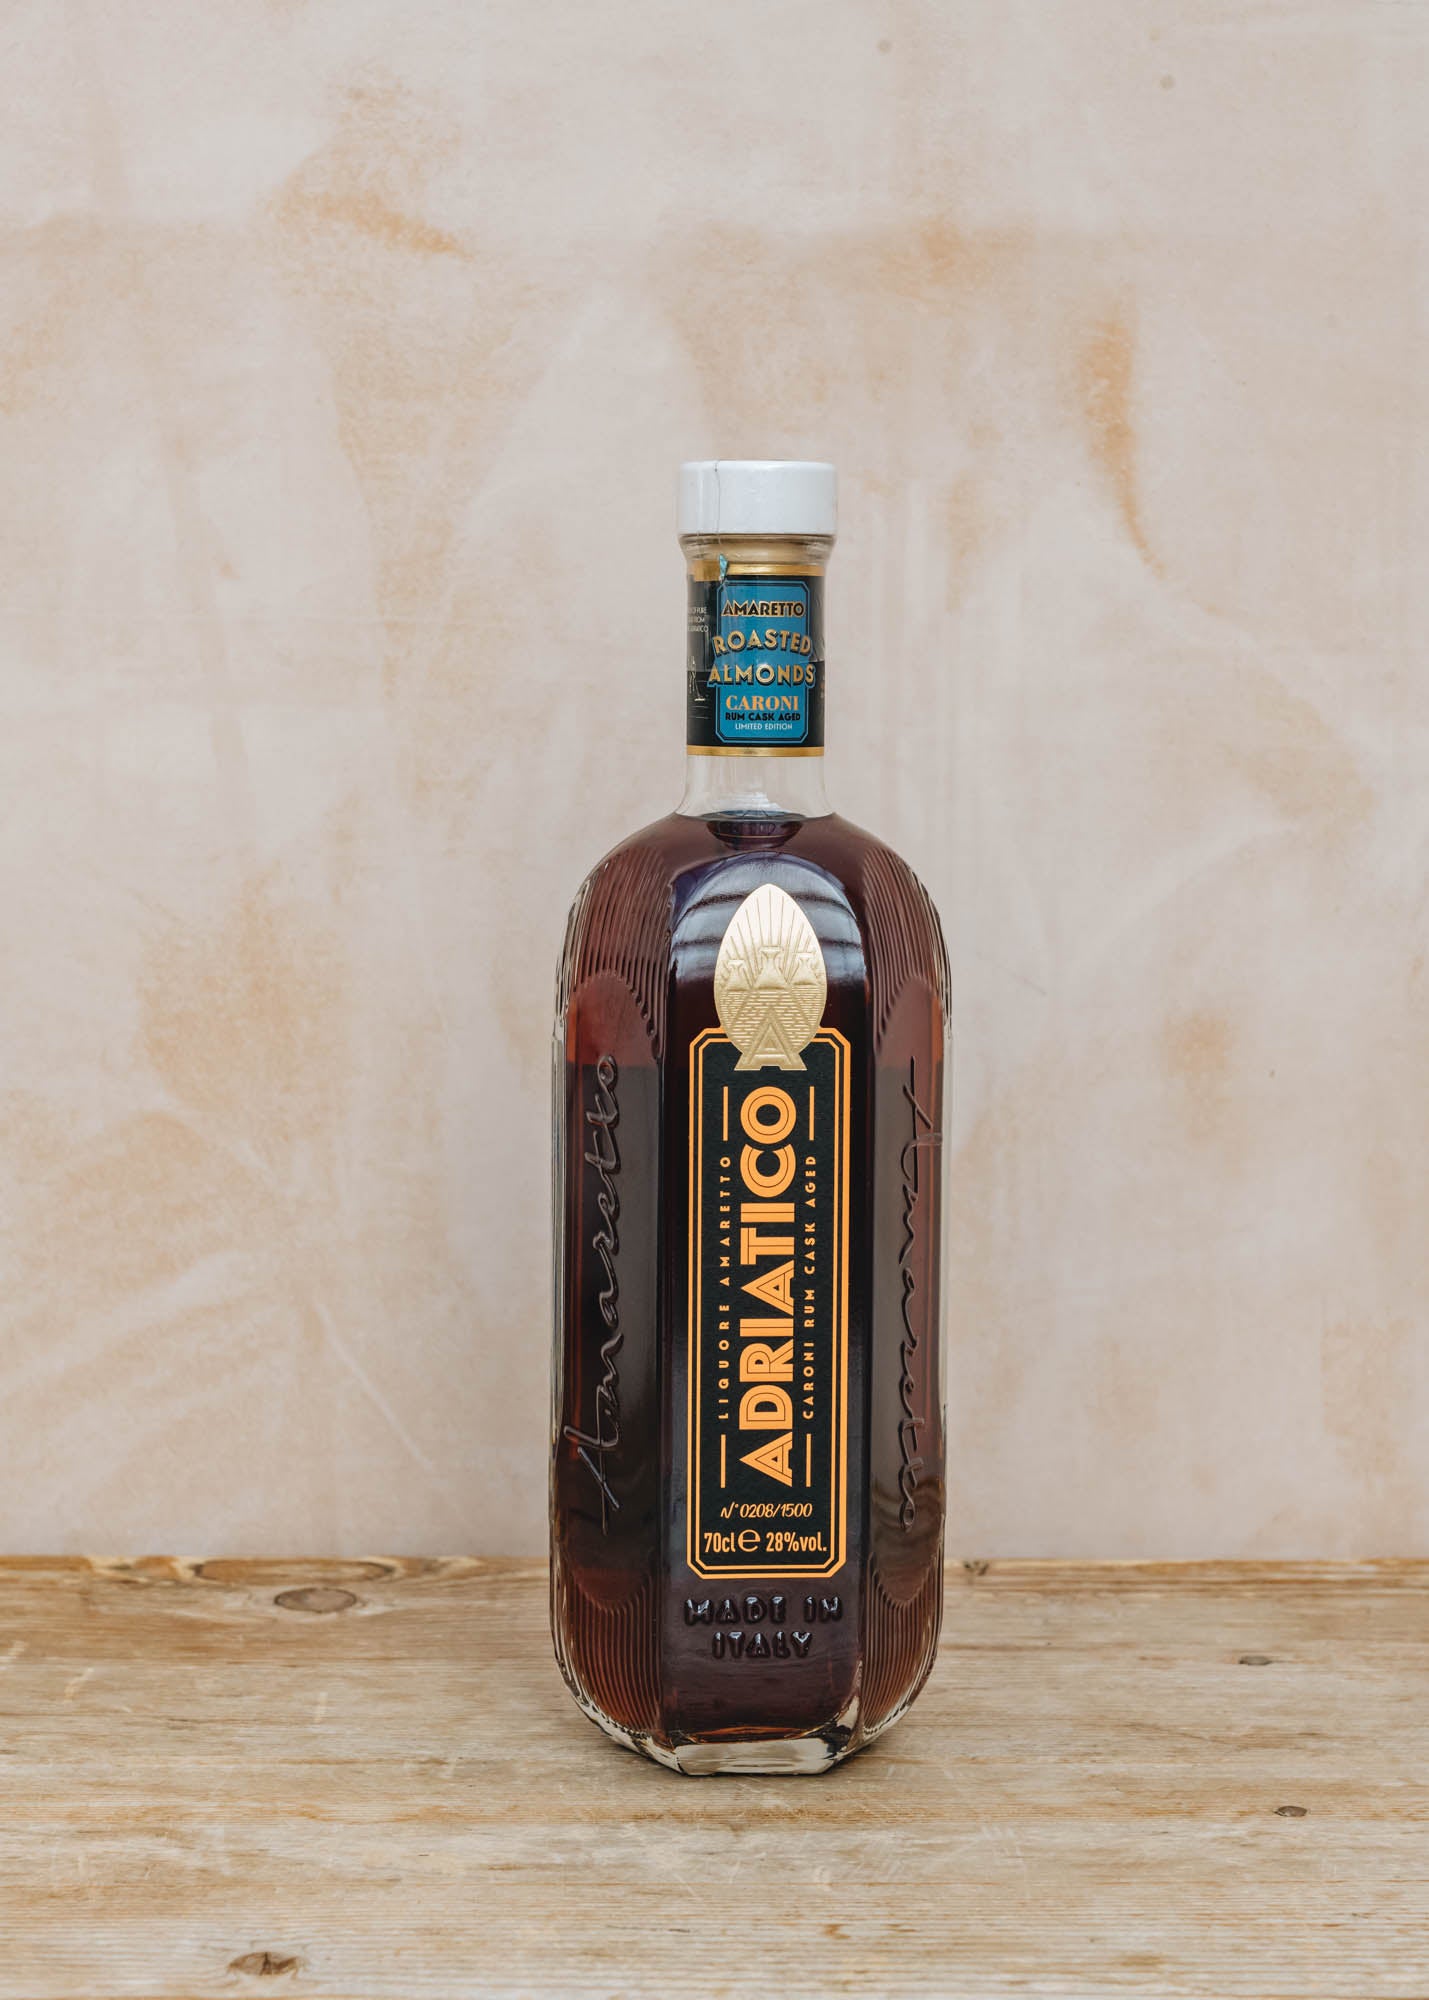 Adriatico Caroni Rum, 70cl